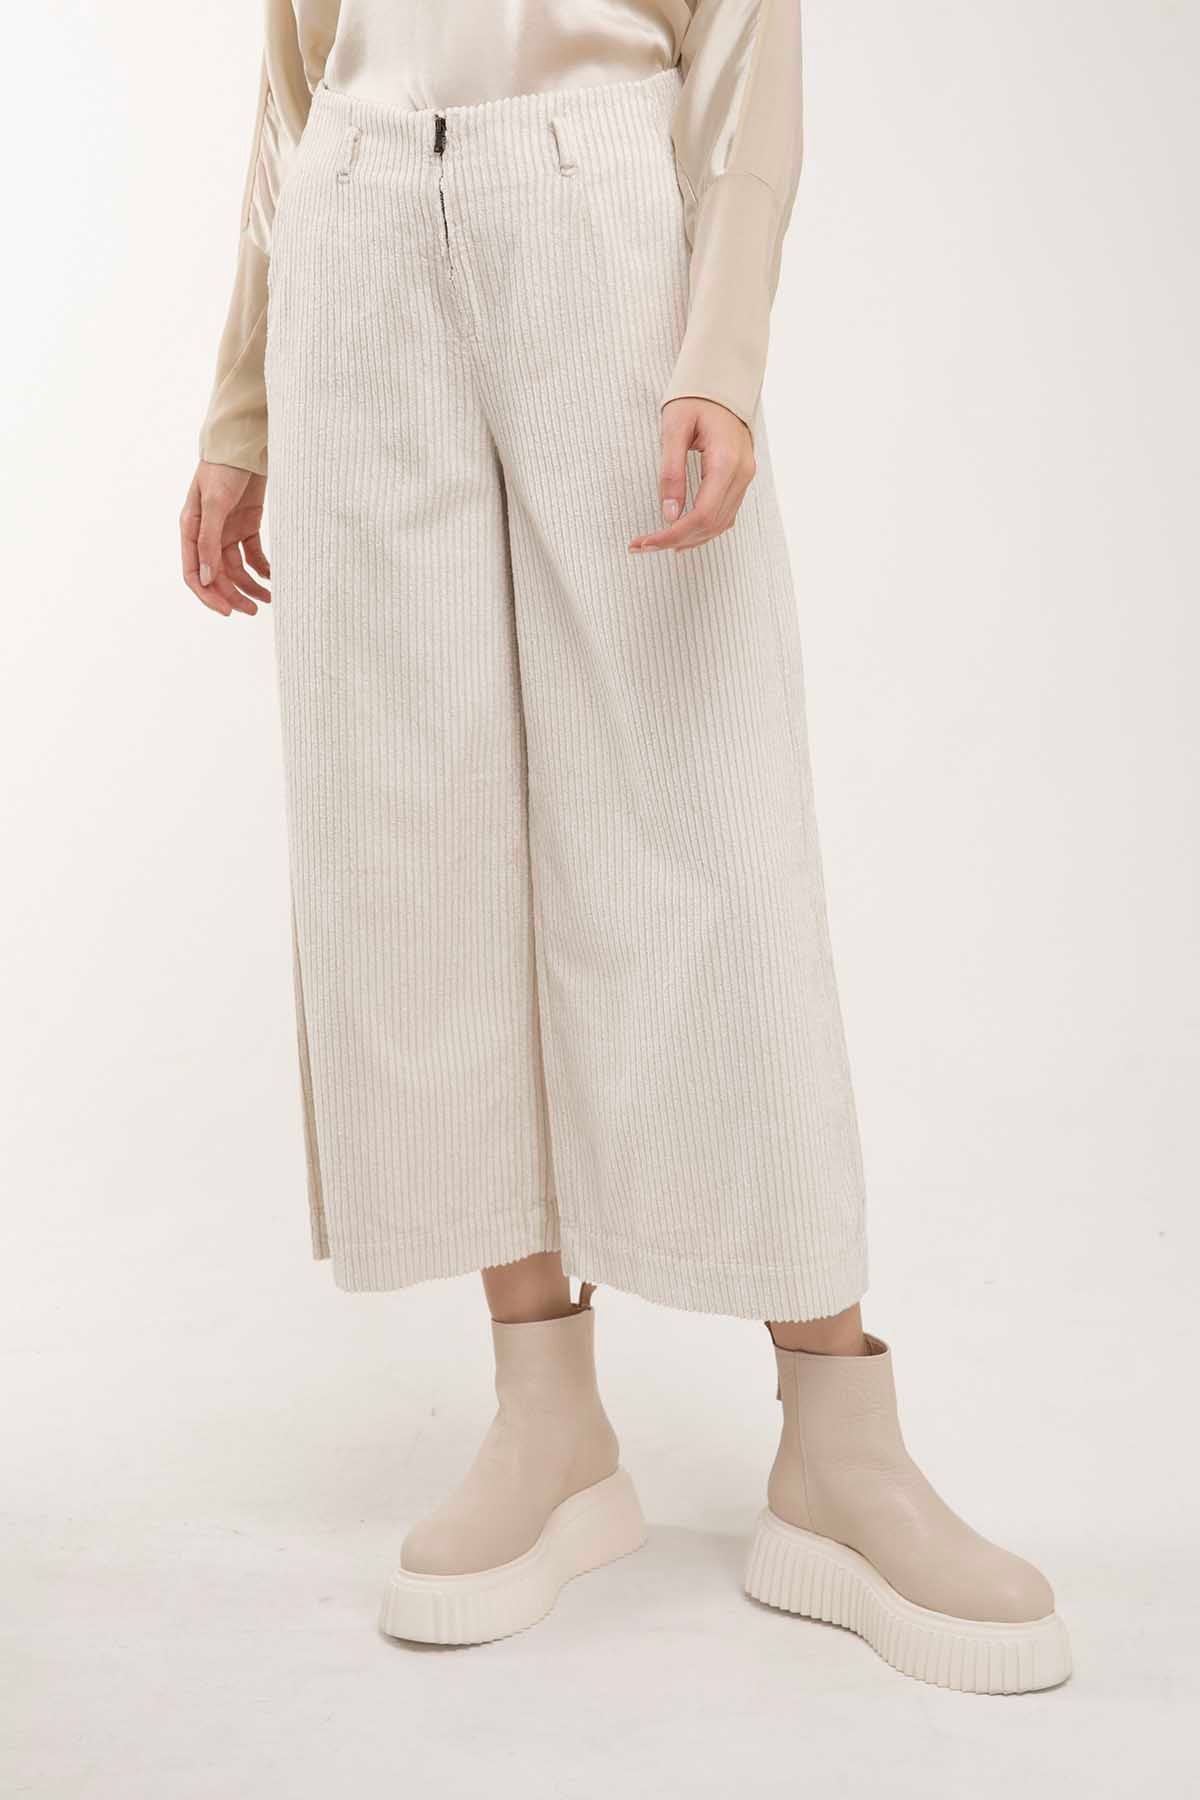 Transit Crop Pantolon-Libas Trendy Fashion Store